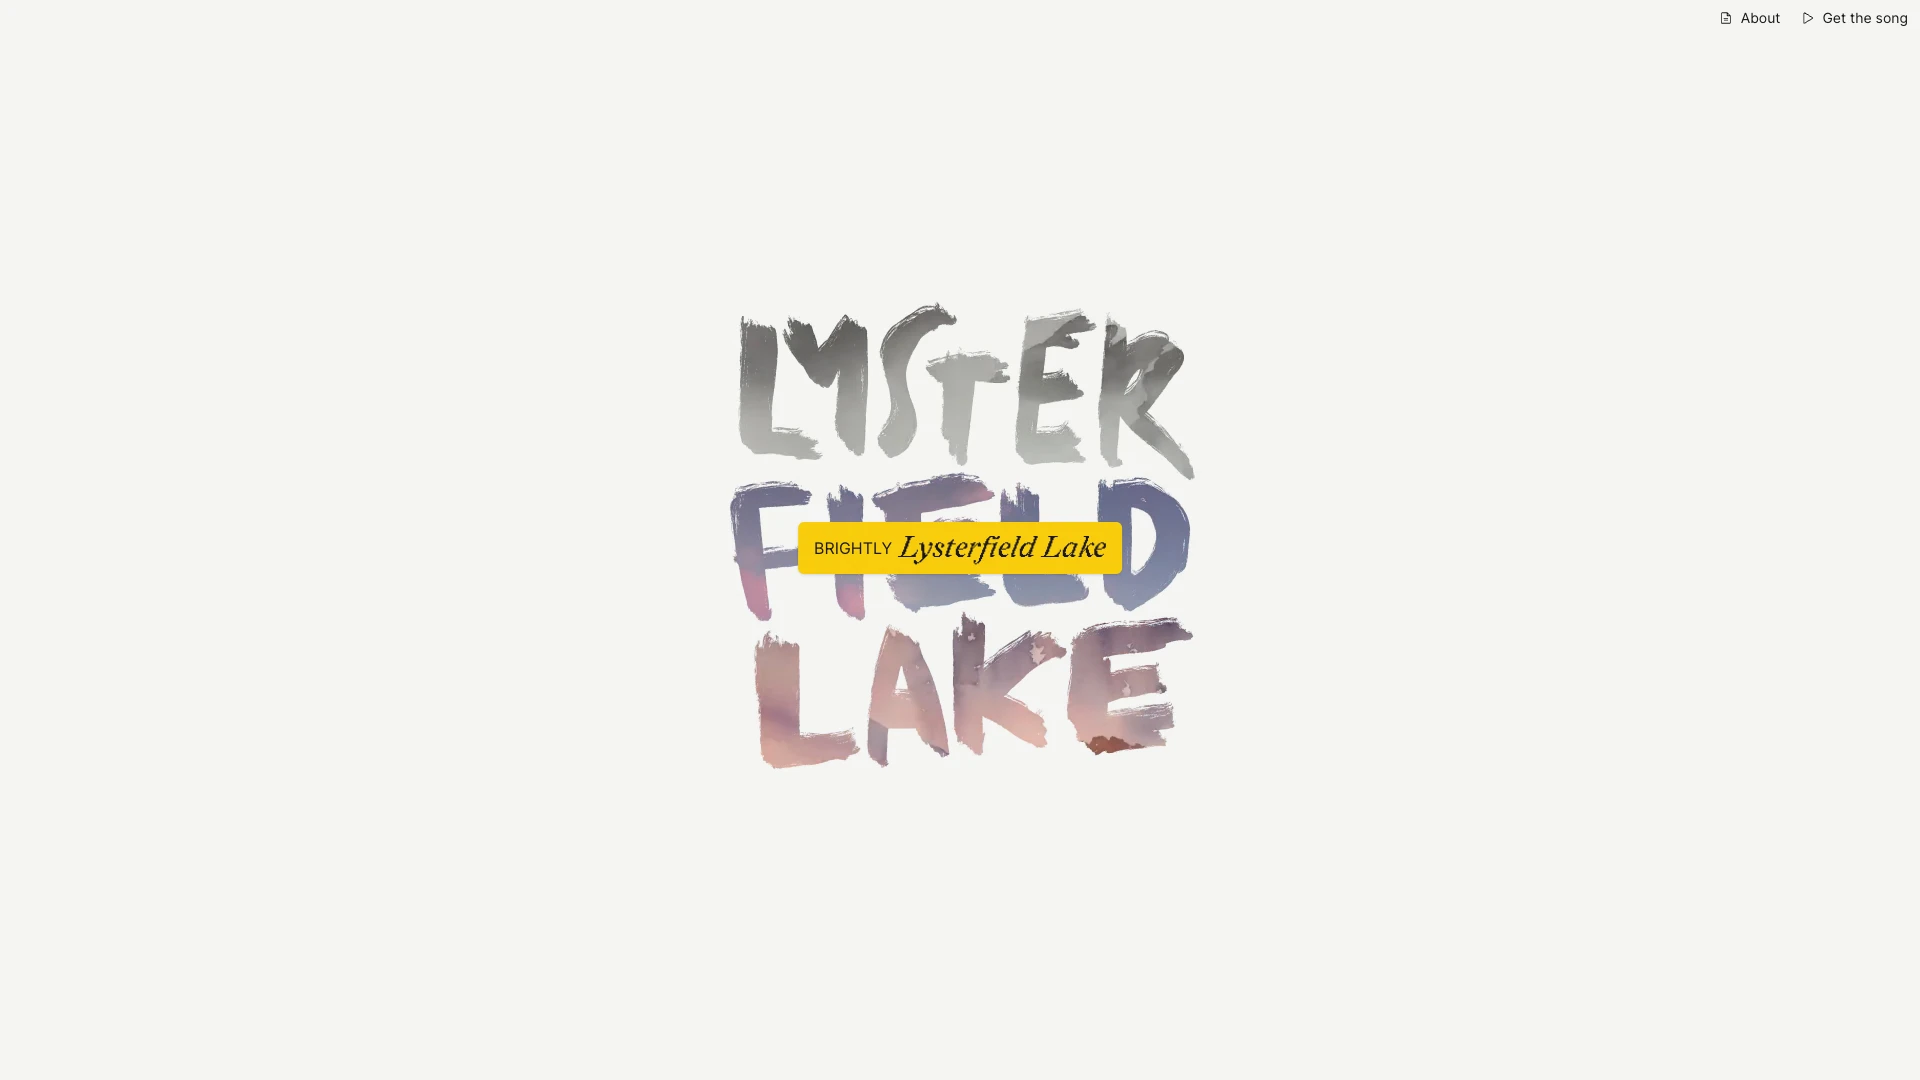 Lysterfield Lake